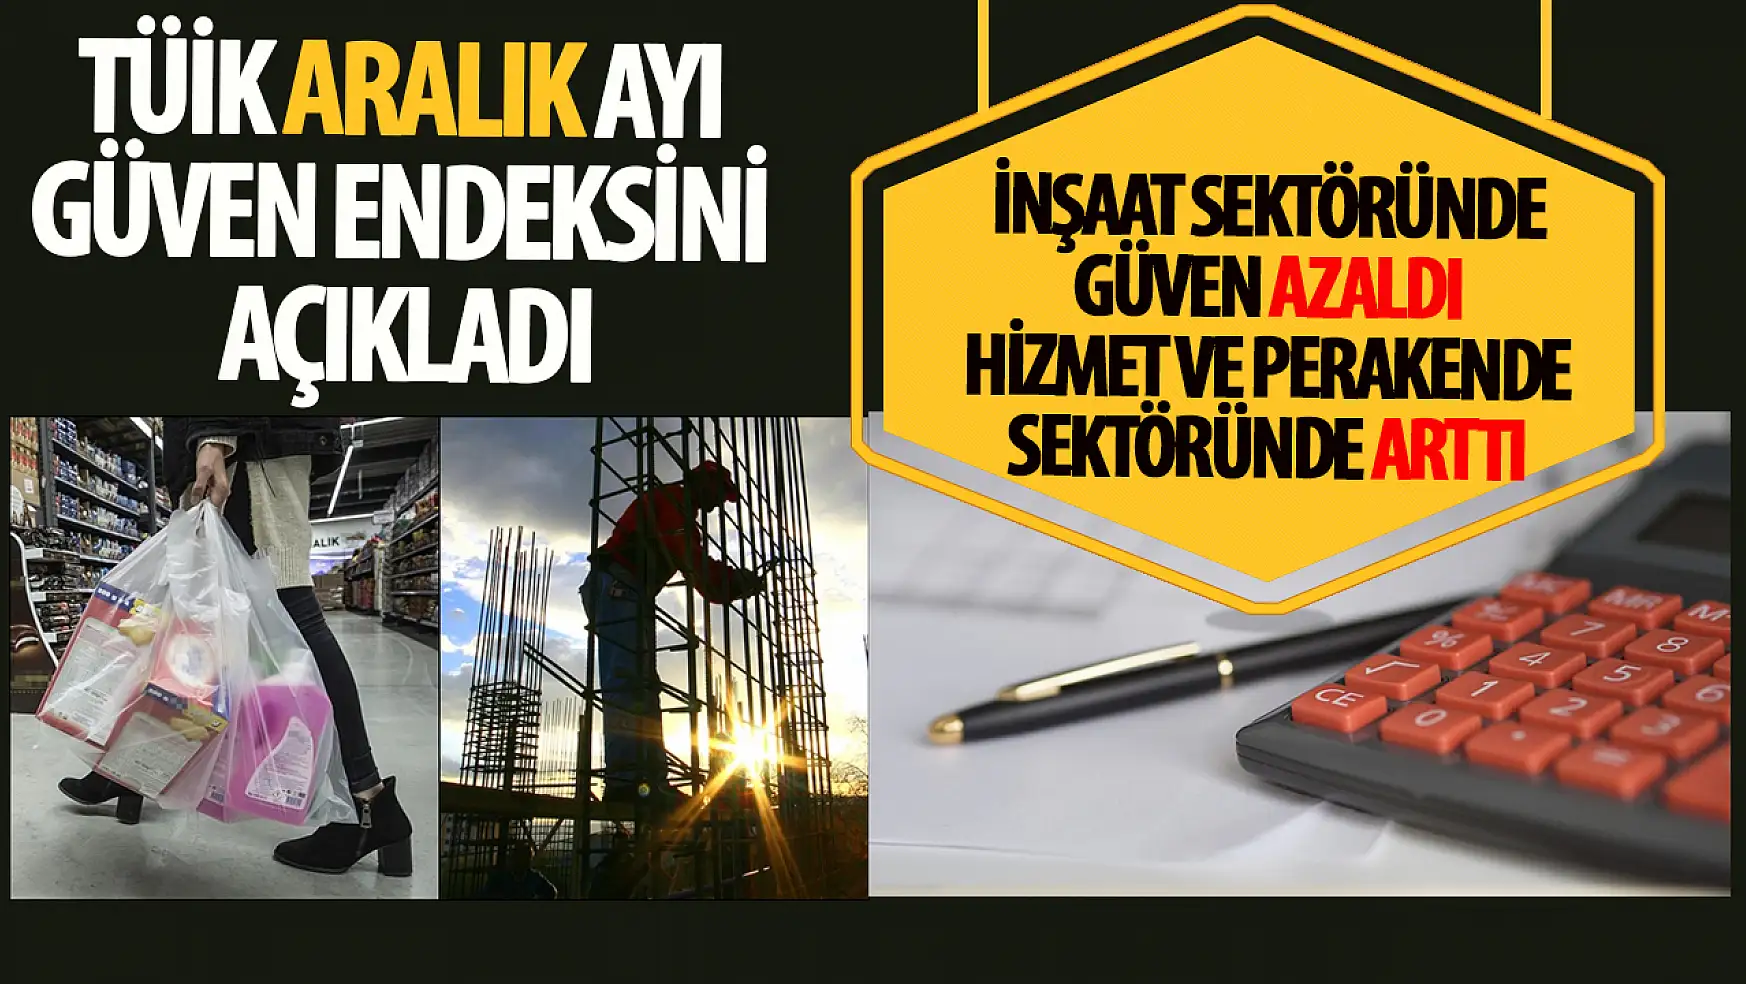 Türkiye'de İnşaat Sektöründe Güven Azalırken, Hizmet ve Perakende Ticarette Artış Gözlendi